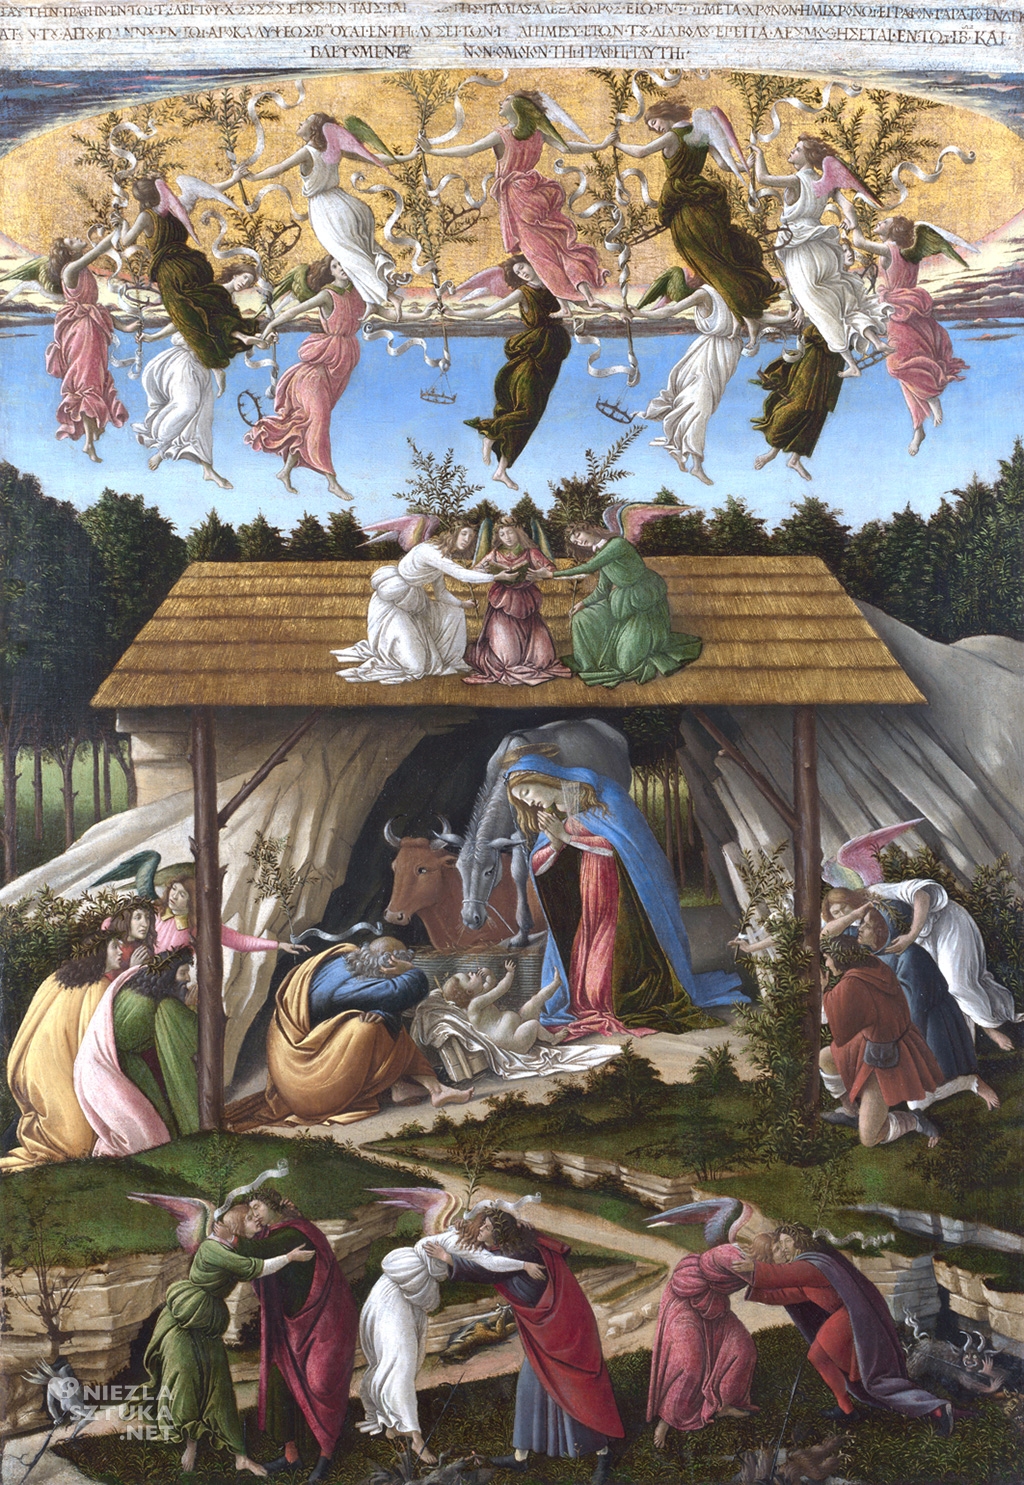 'Mistyczne narodzenie' Sandro Botticelli [źródło: https://niezlasztuka.net/o-sztuce/sandro-botticelli-mistyczne-narodzenie]